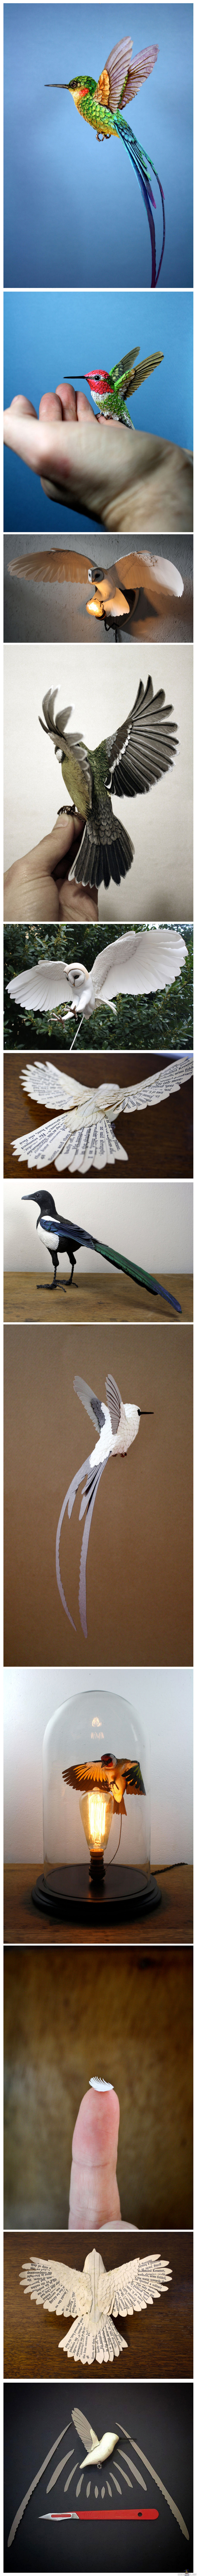 Paperista ja puusta tehtyjä lintuja - Kokoelma paperista ja puusta tehtyjä lintuja, hienon näköisiä!